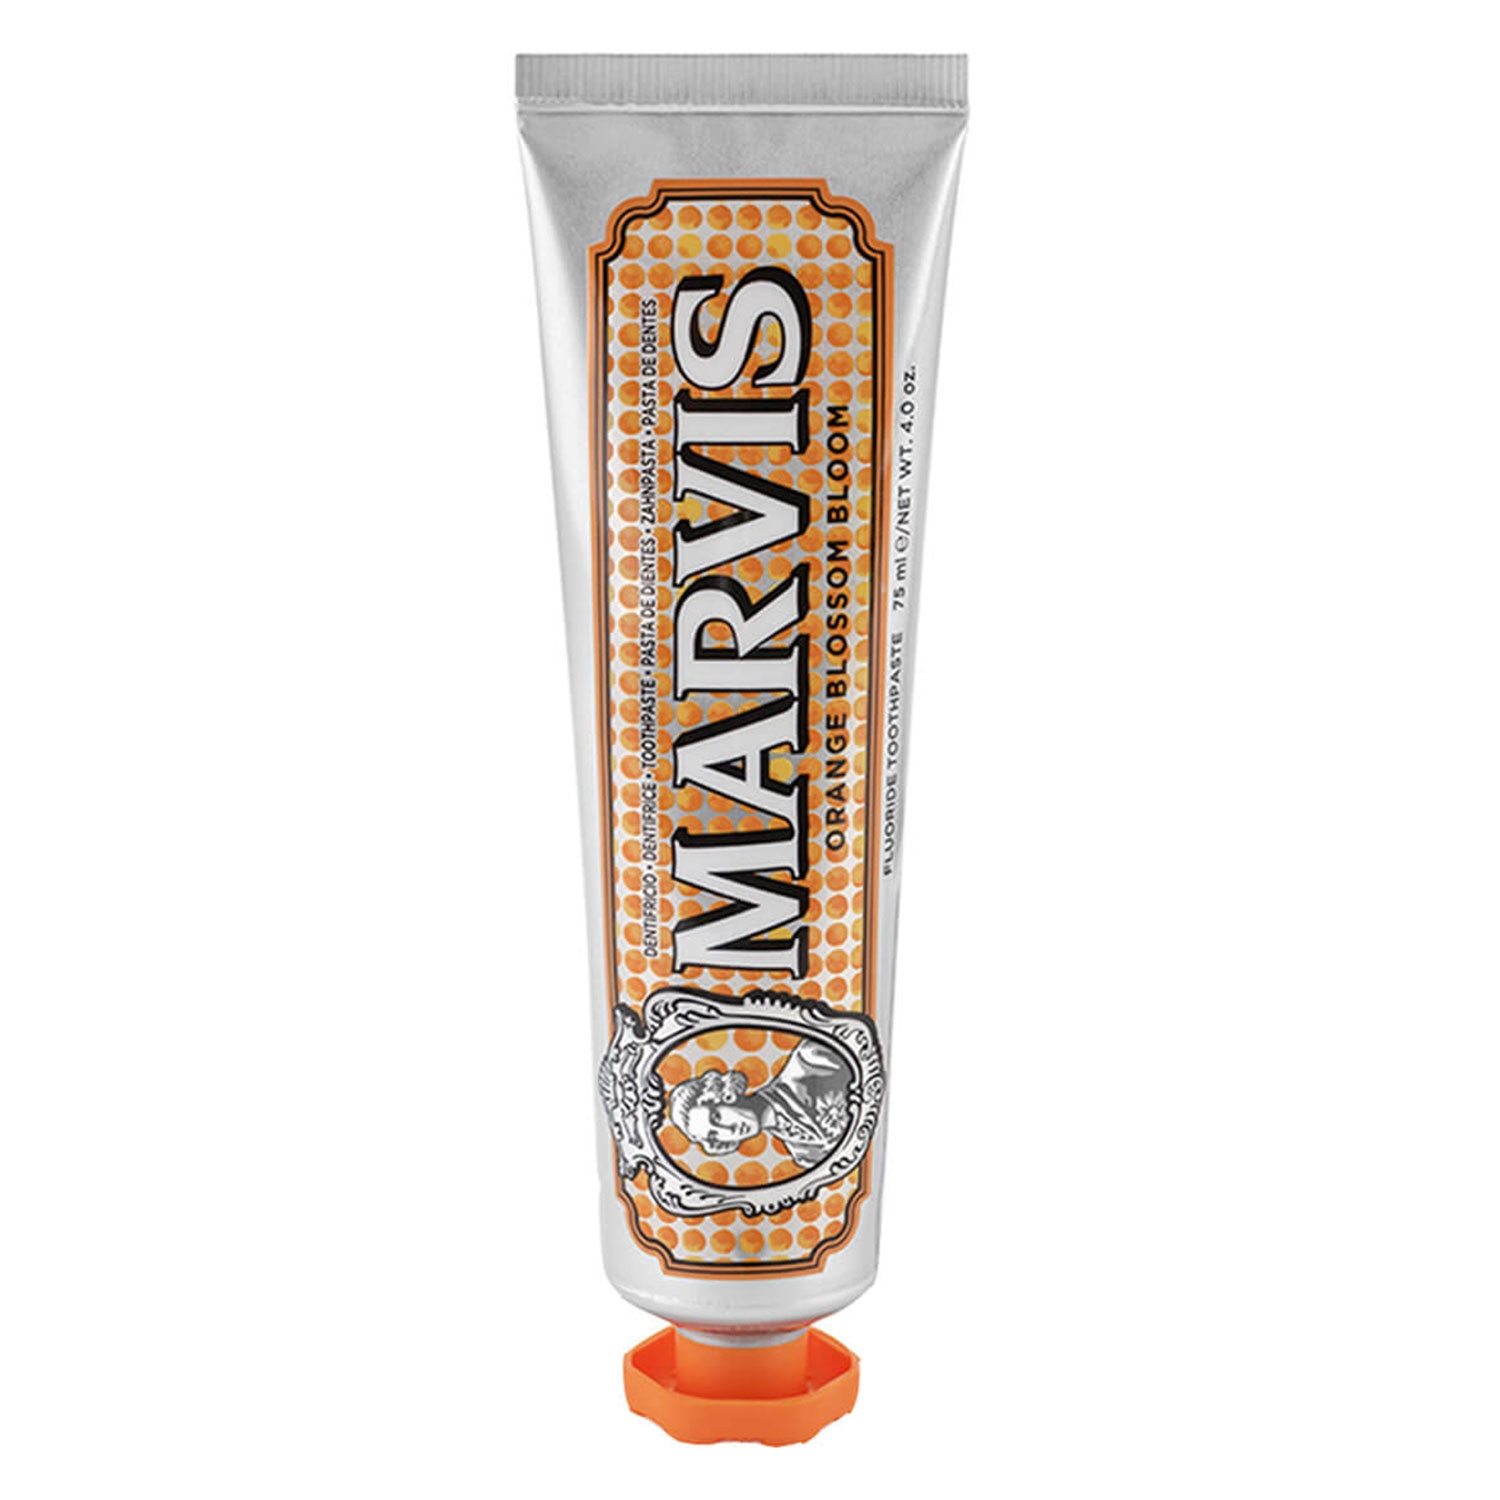 Produktbild von Marvis - Orange Blossom Bloom Toothpaste